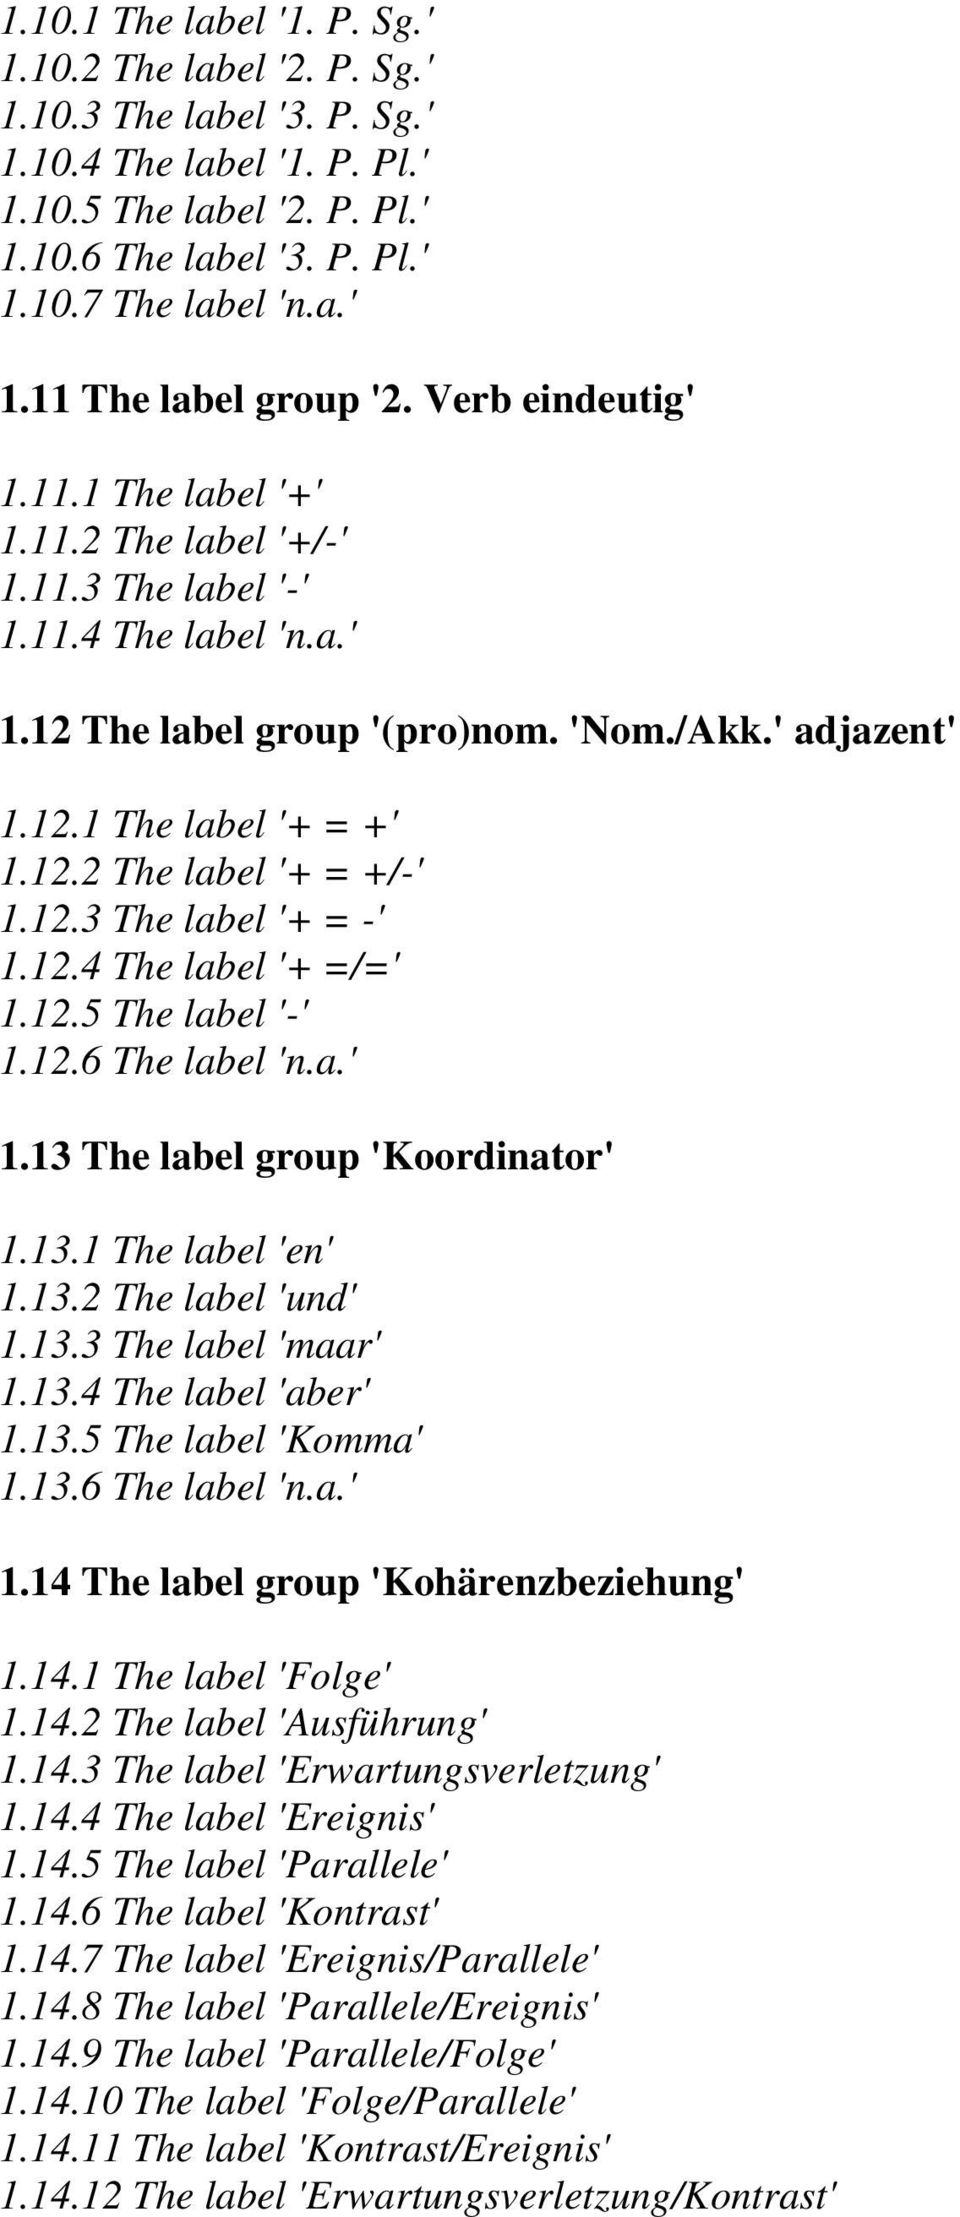 12.3 The label '+ = -' 1.12.4 The label '+ =/=' 1.12.5 The label '-' 1.12.6 The label 'n.a.' 1.13 The label group 'Koordinator' 1.13.1 The label 'en' 1.13.2 The label 'und' 1.13.3 The label 'maar' 1.